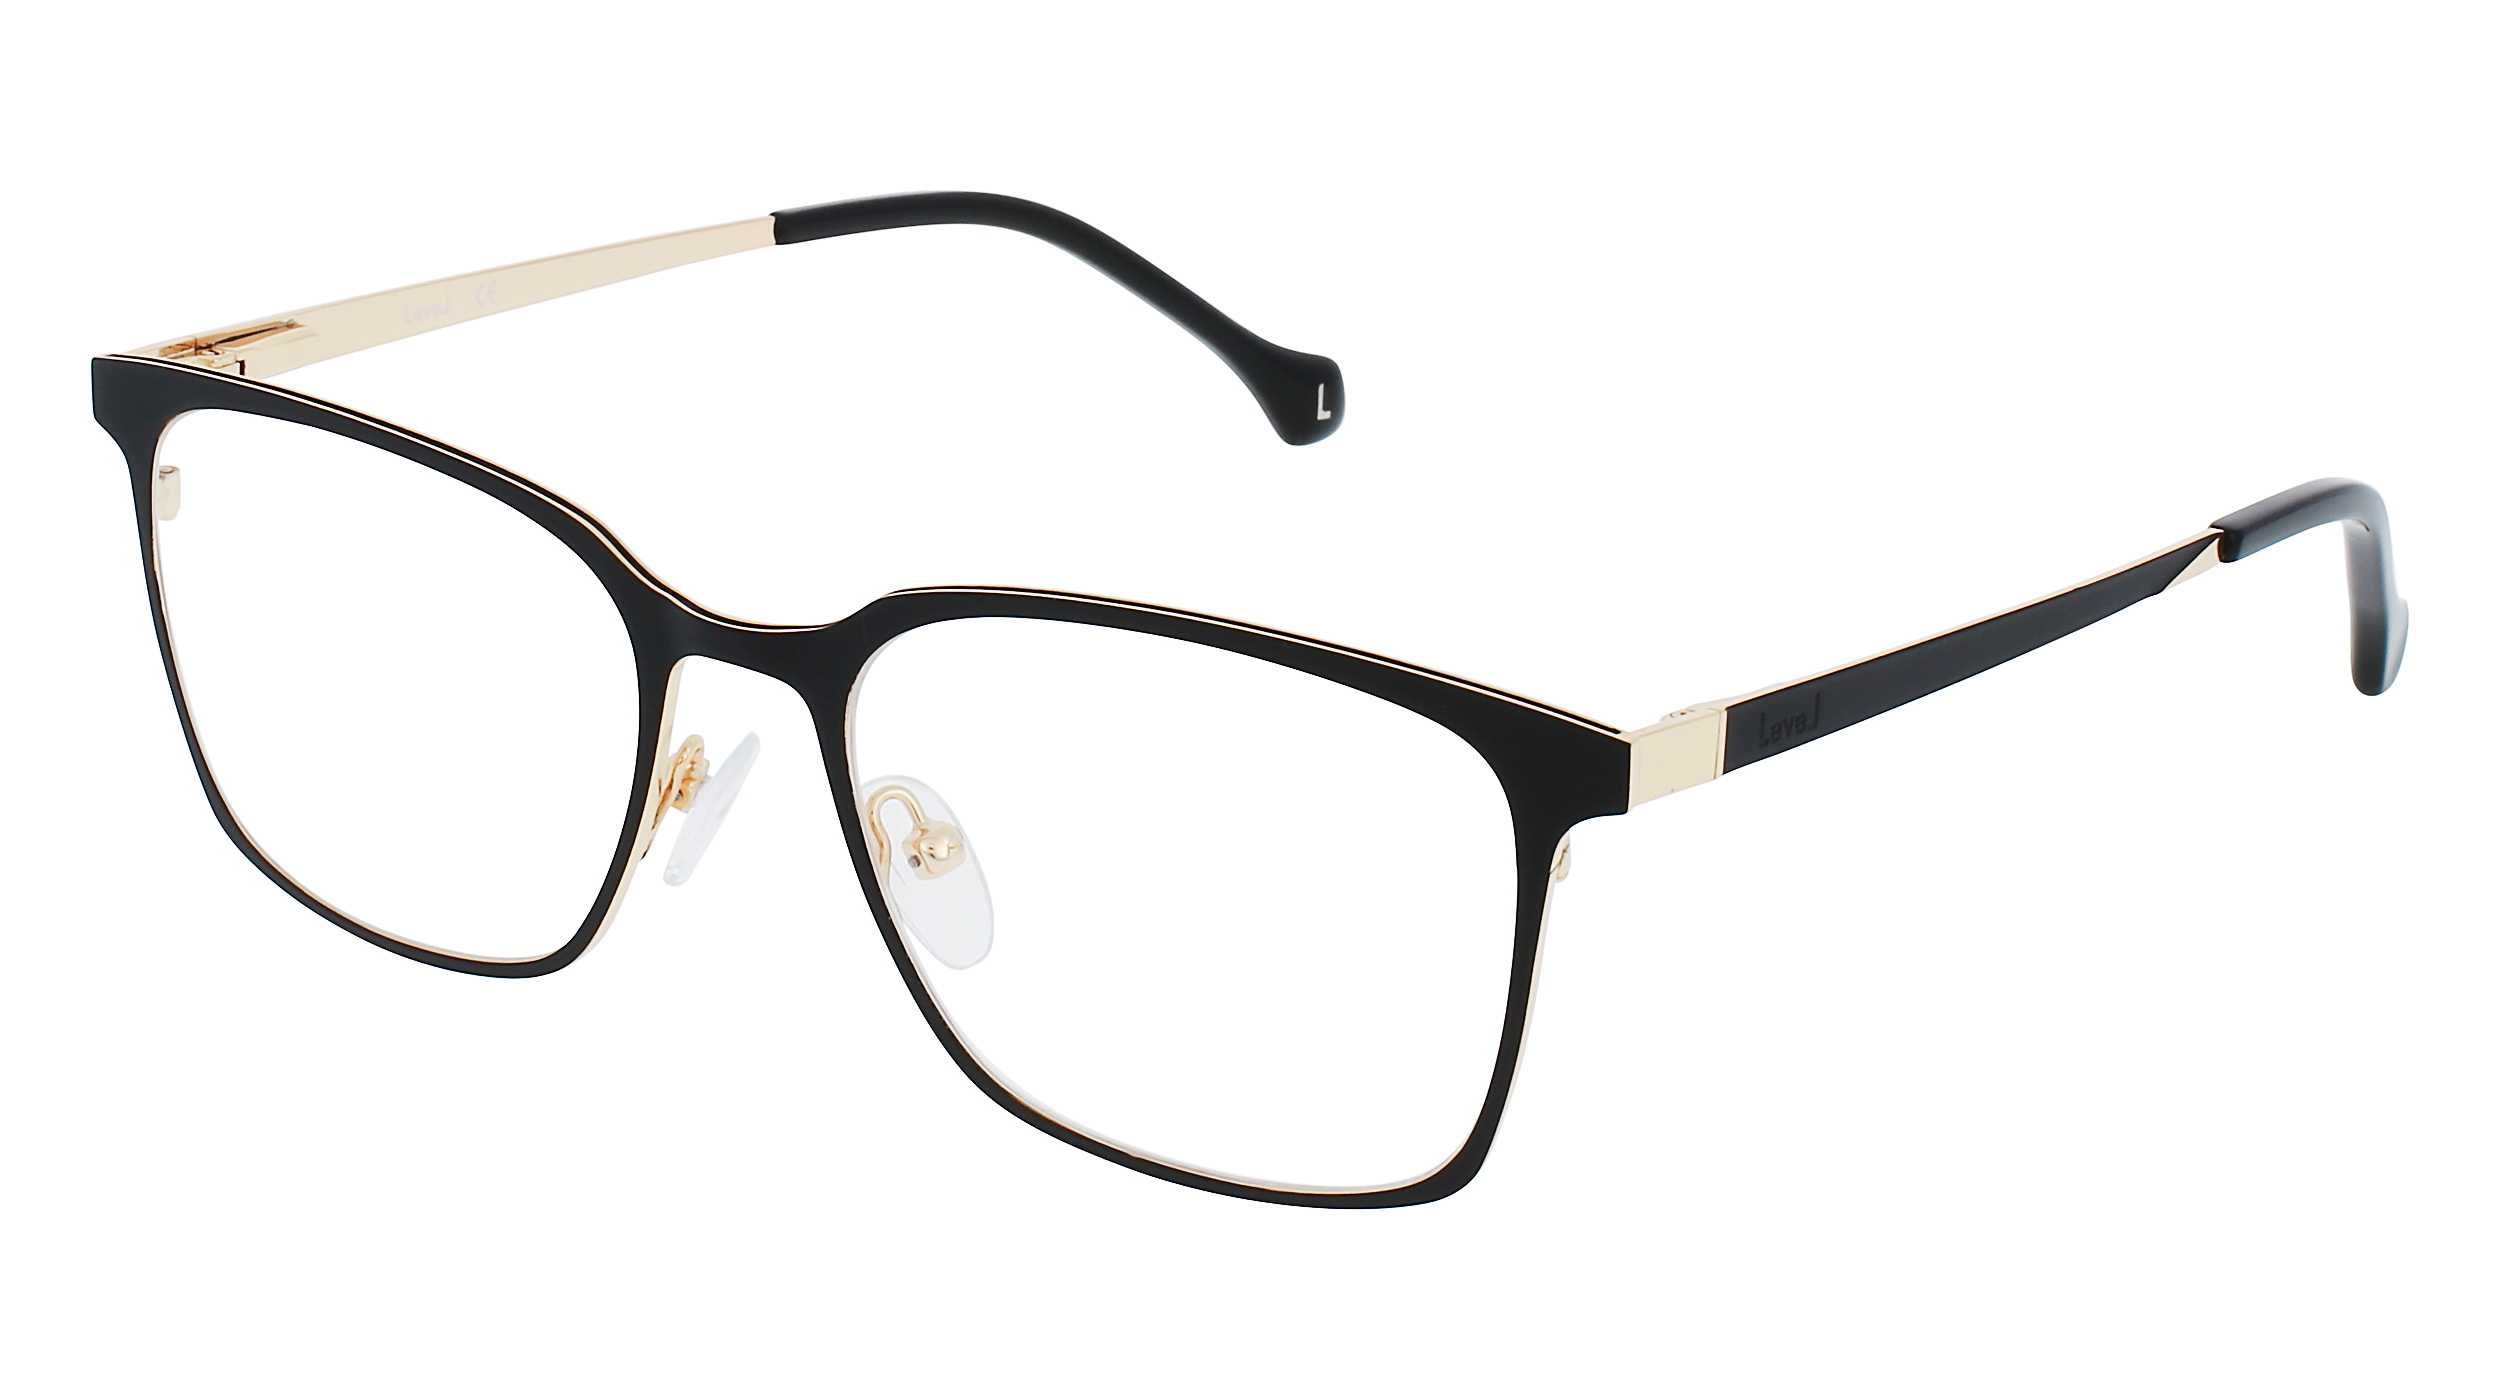 eyeglasses-level-le-2378-noir-52-17-man-noir-square-frames-full-frame